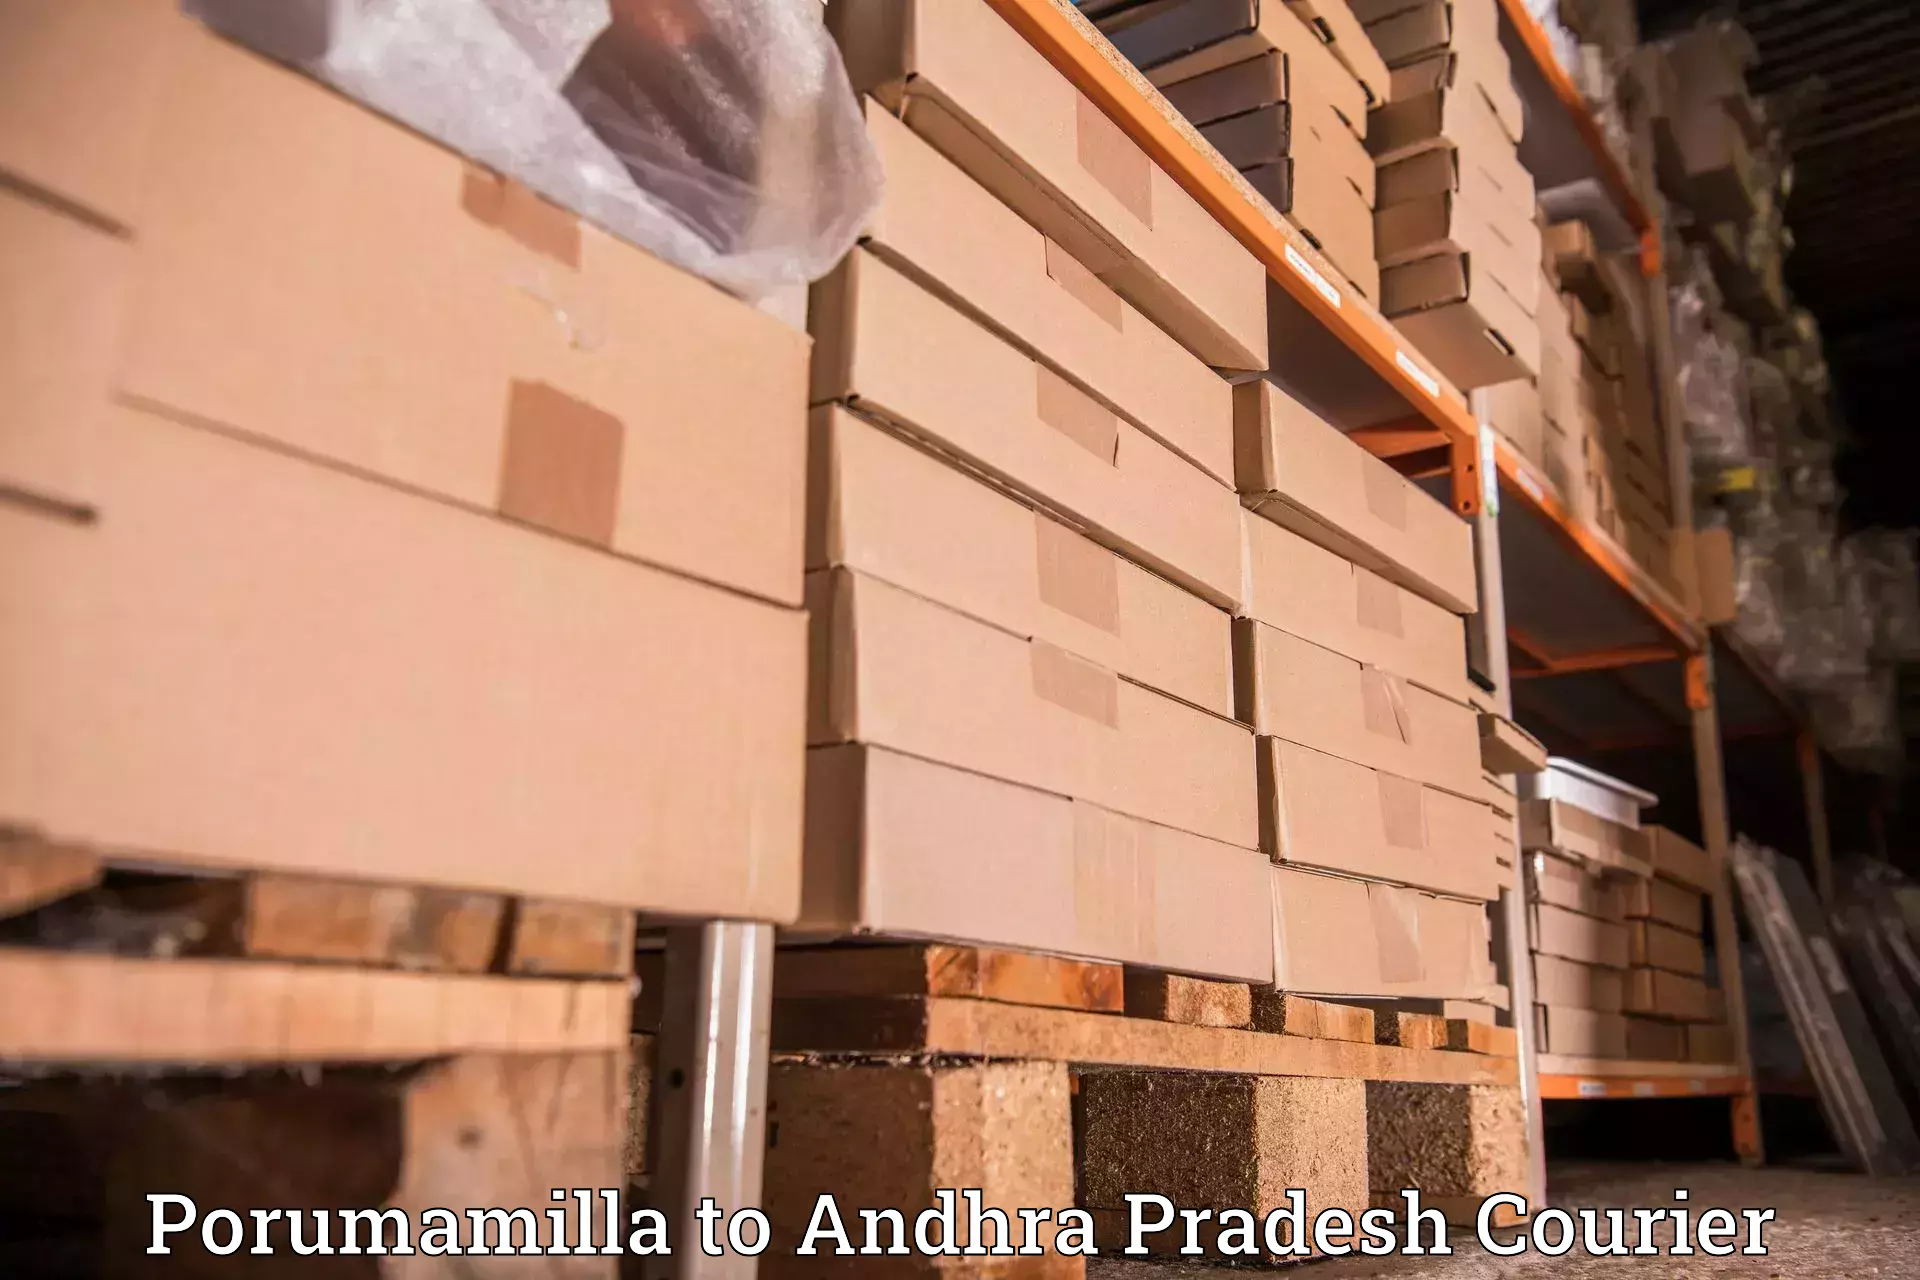 Reliable delivery network in Porumamilla to Ichchapuram